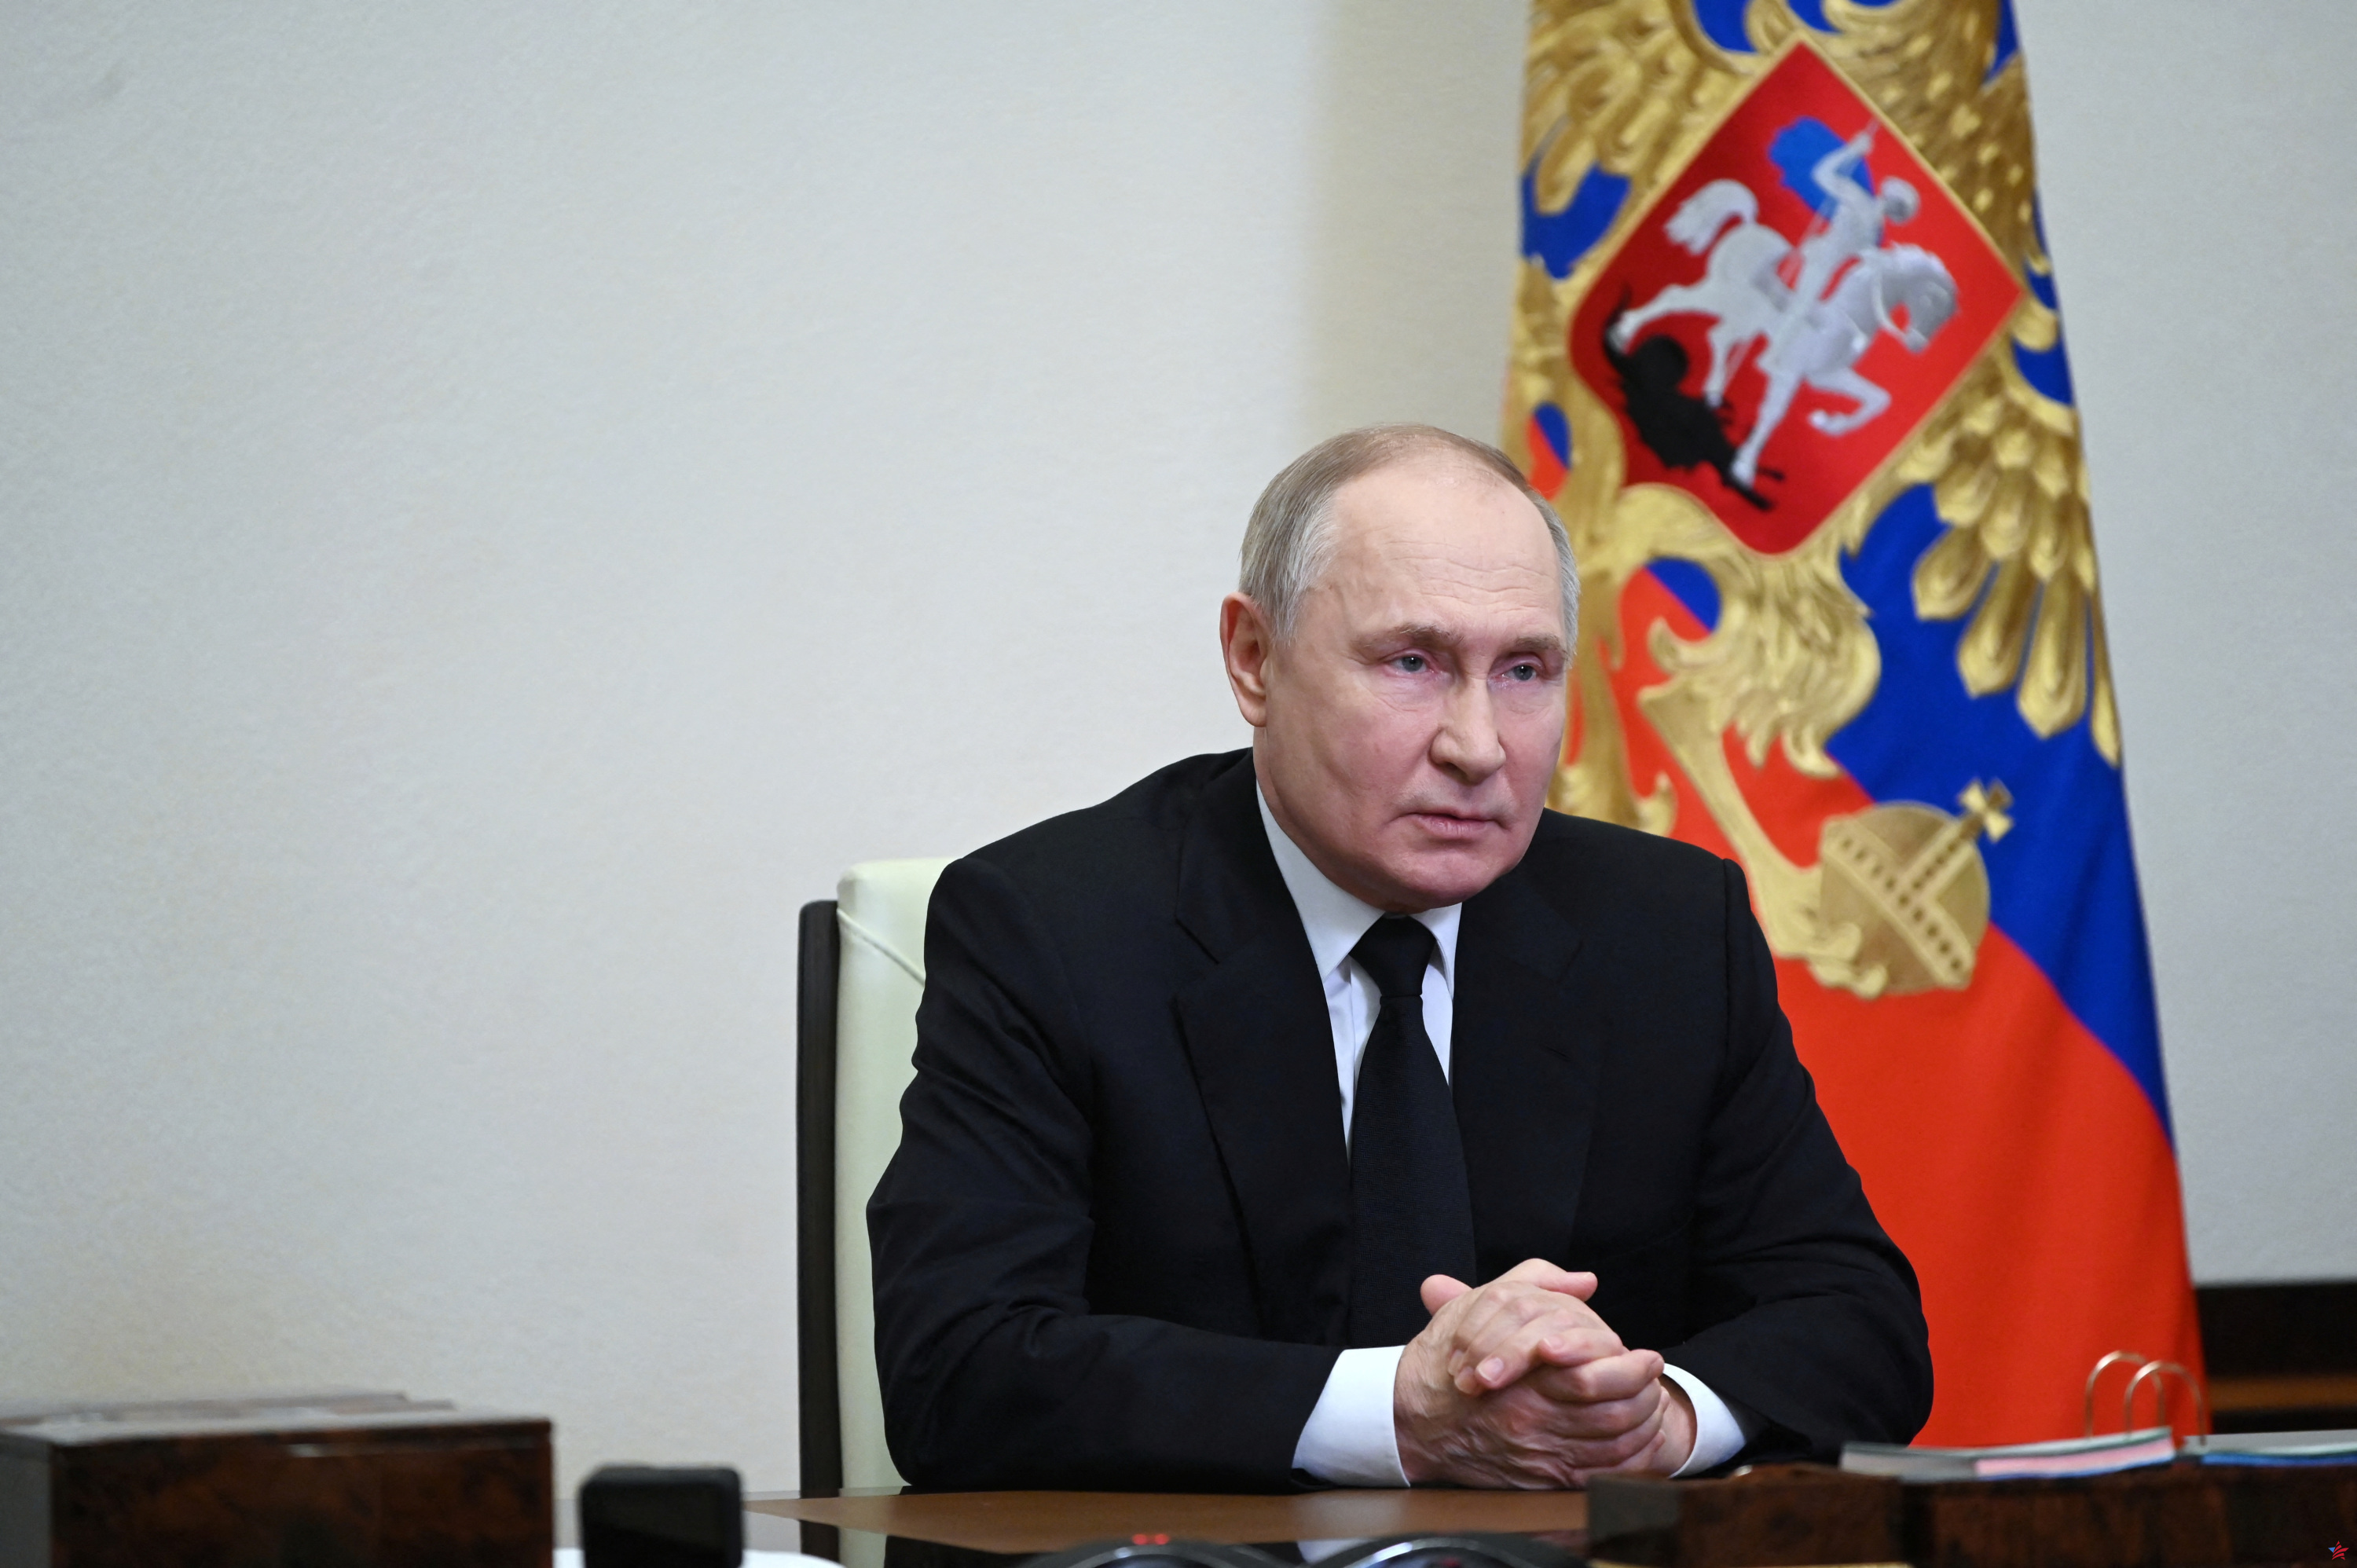 Ataque en Moscú: Vladimir Putin dice que el ataque fue llevado a cabo por “islamistas radicales”